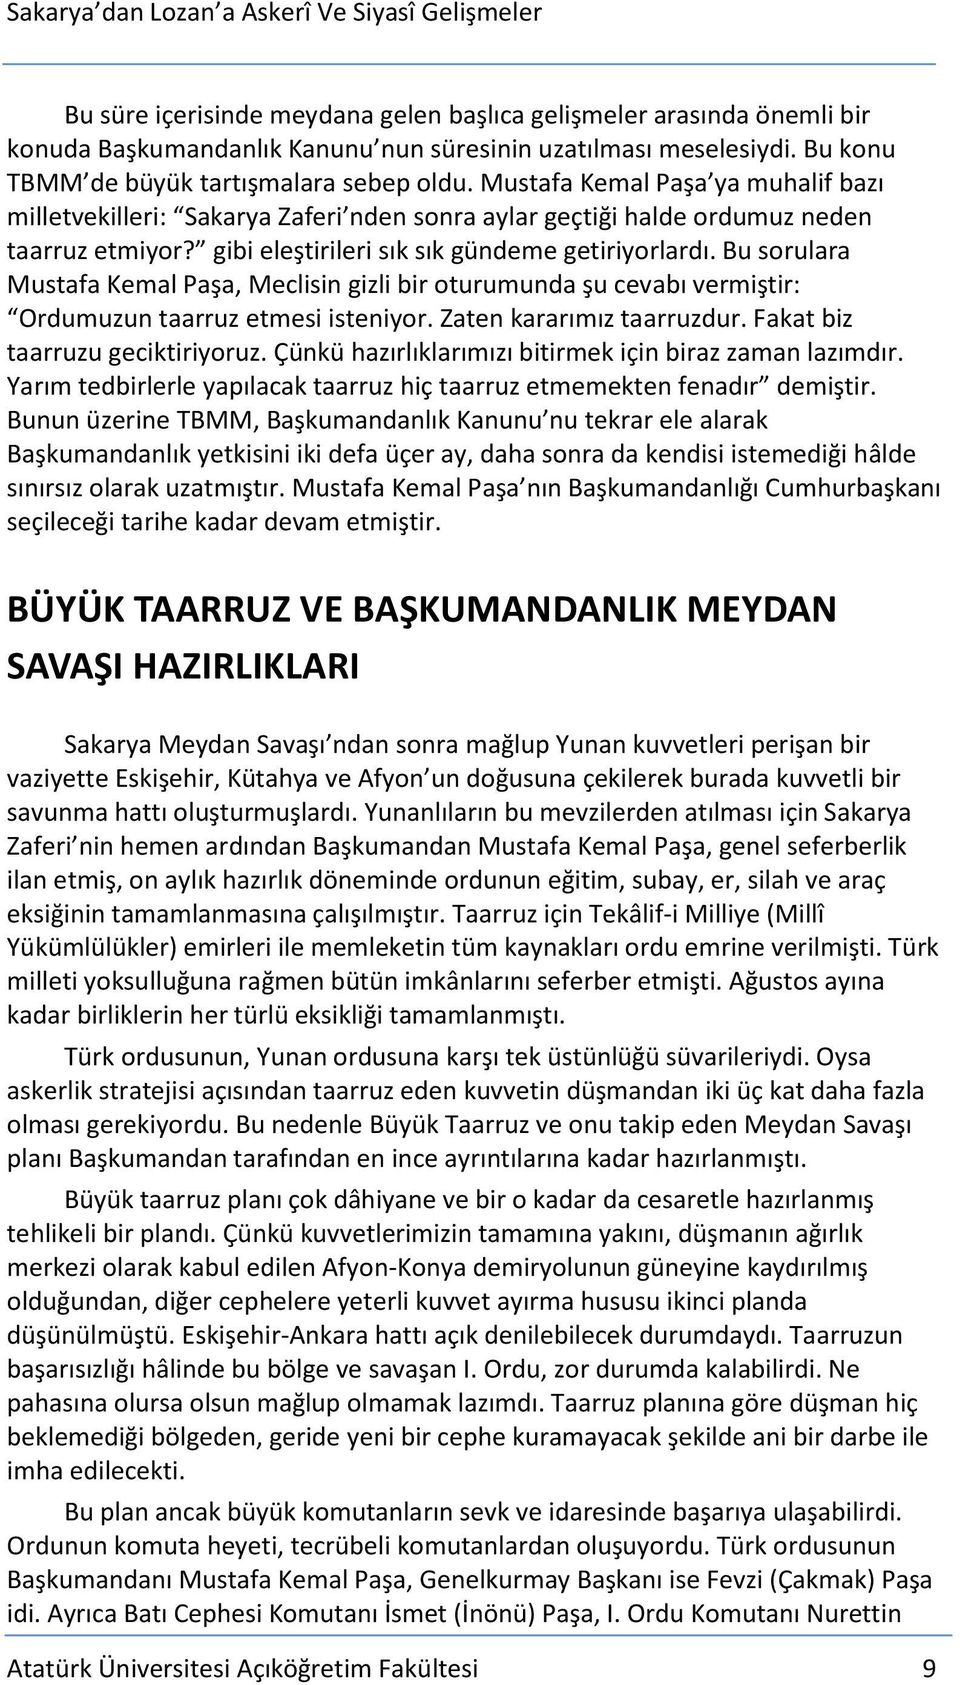 Bu sorulara Mustafa Kemal Paşa, Meclisin gizli bir oturumunda şu cevabı vermiştir: Ordumuzun taarruz etmesi isteniyor. Zaten kararımız taarruzdur. Fakat biz taarruzu geciktiriyoruz.